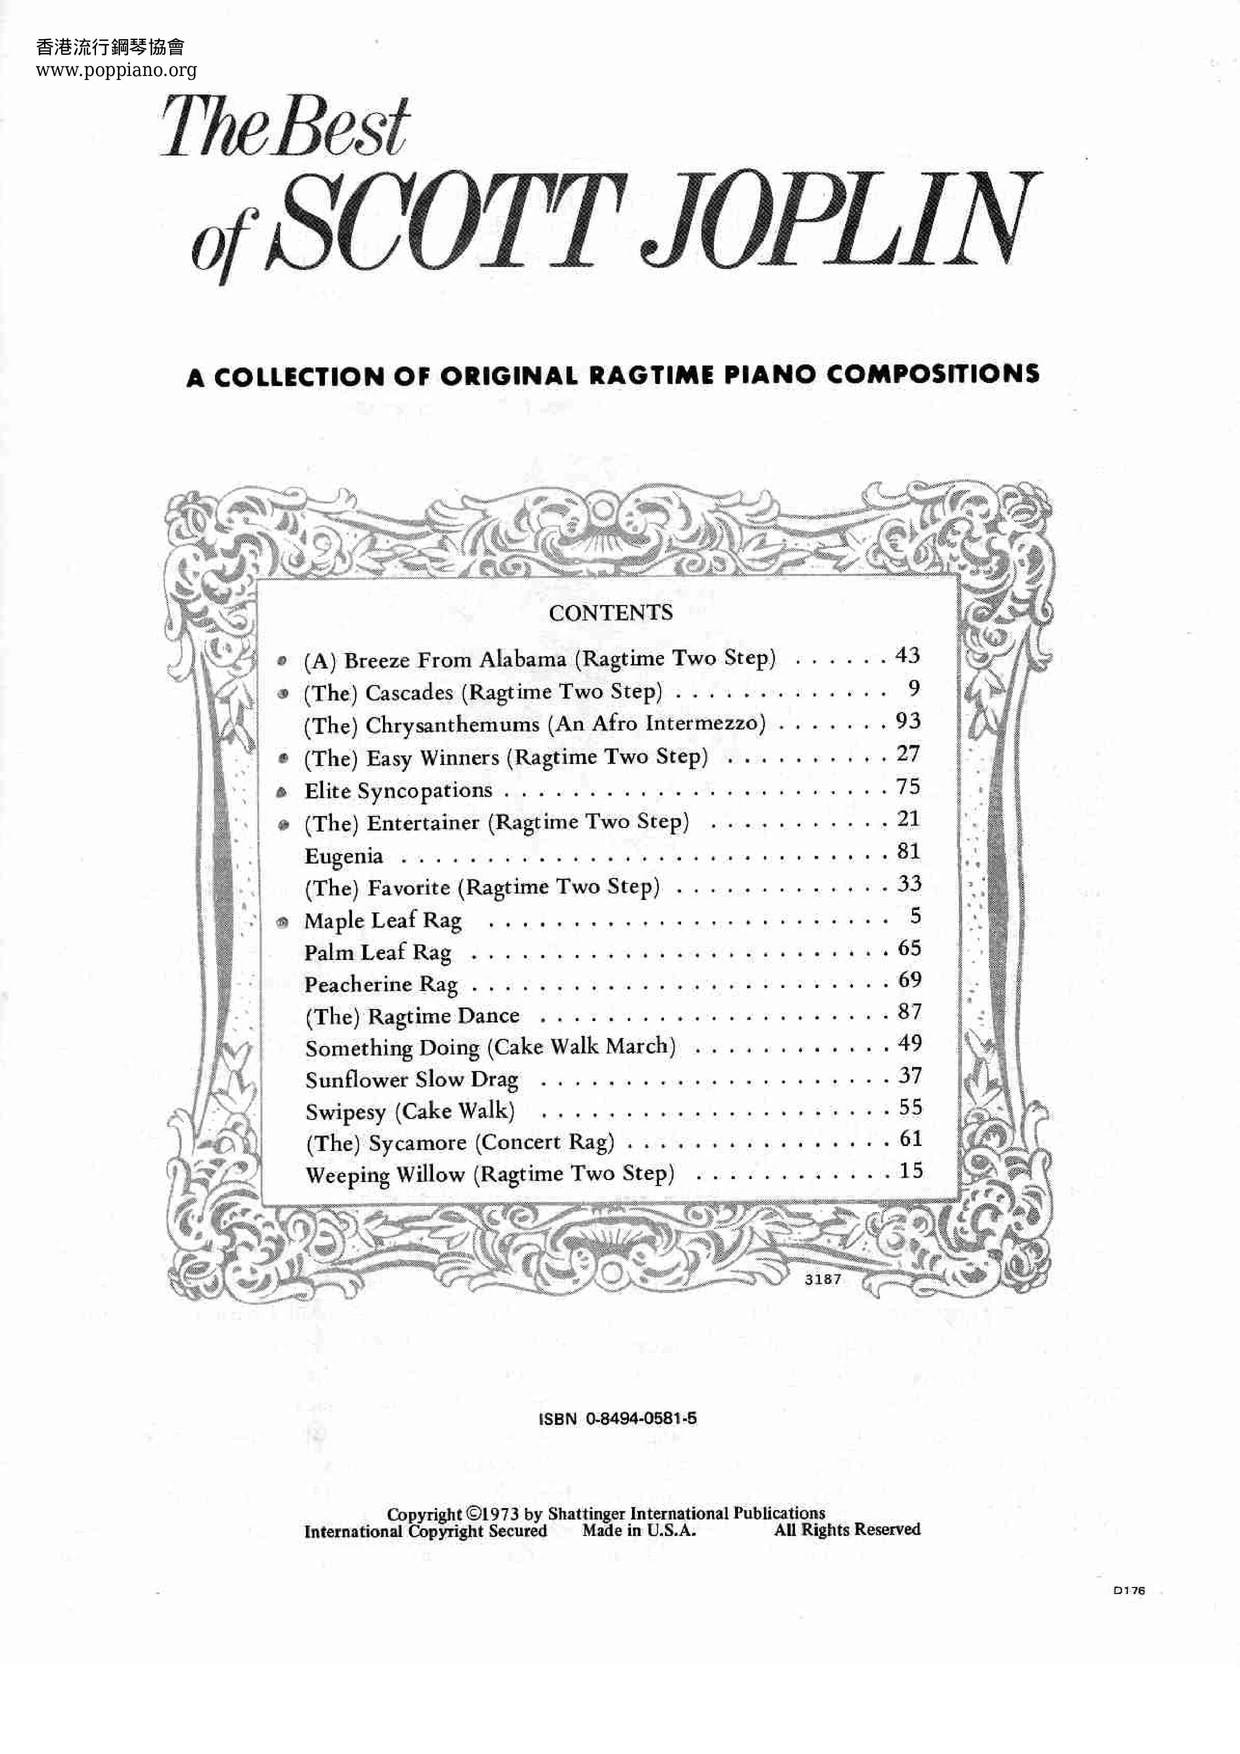 The Best Of Scott Joplin 88 pages Score